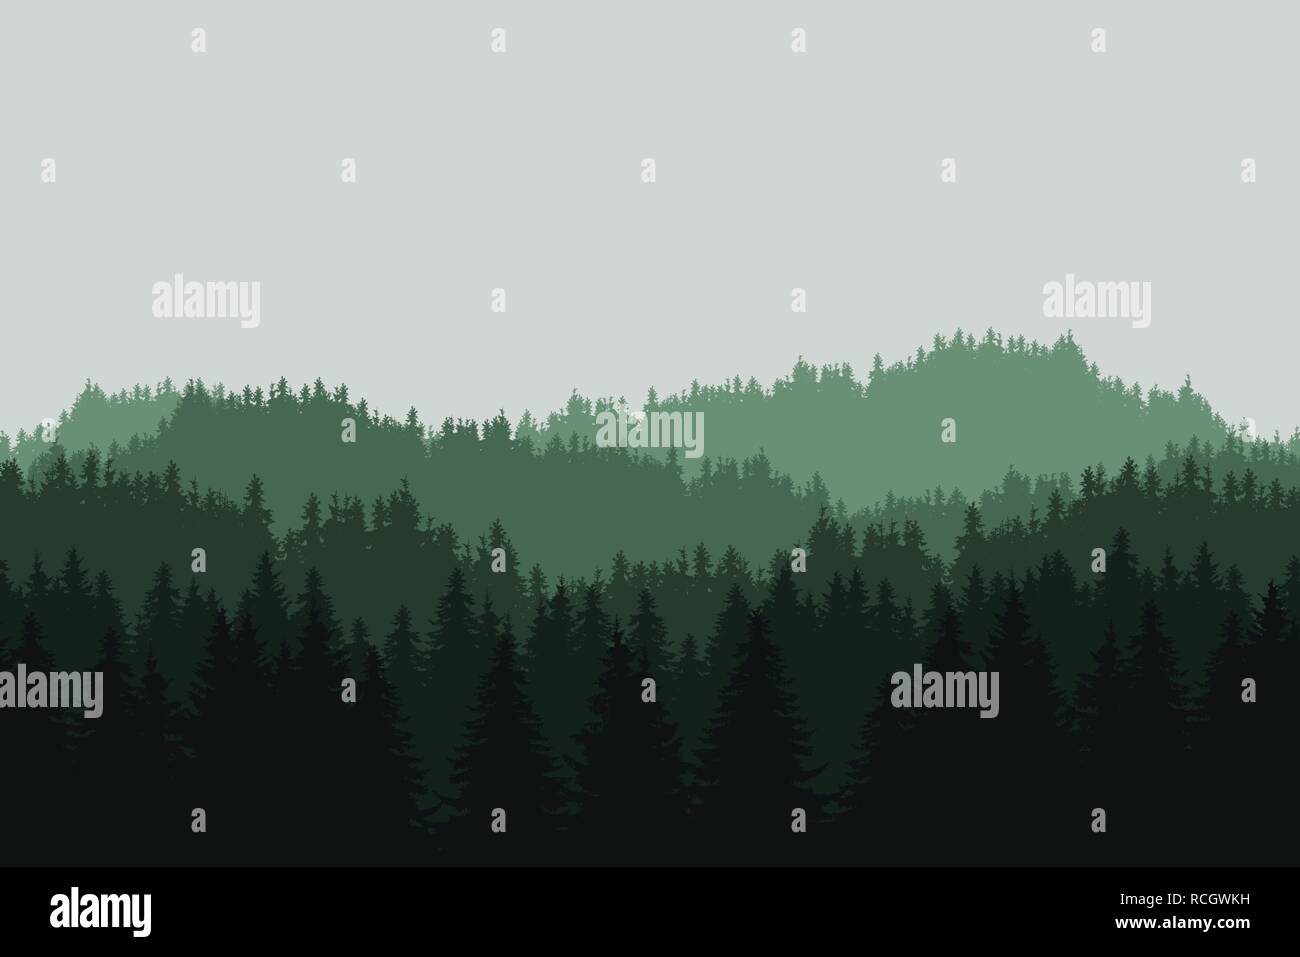 Flache realistische Abbildung eines grünen Berglandschaft mit Nadelwald mit Bäumen und Hügeln unter grauem Himmel - Vektor Stock Vektor